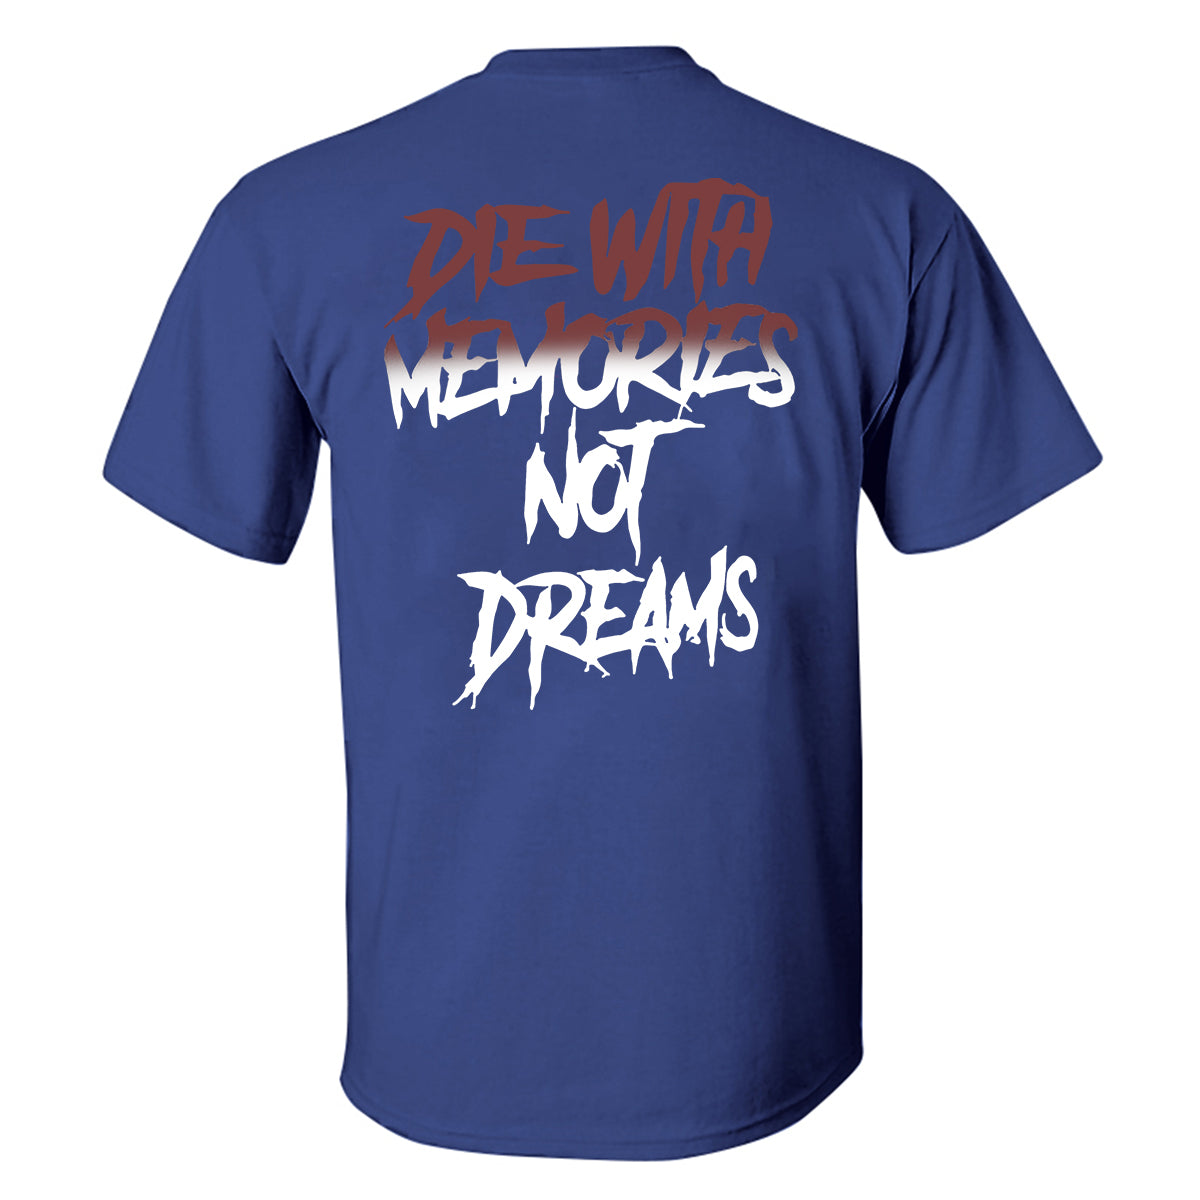 Die With Memories Not Dreams Printed T-shirt